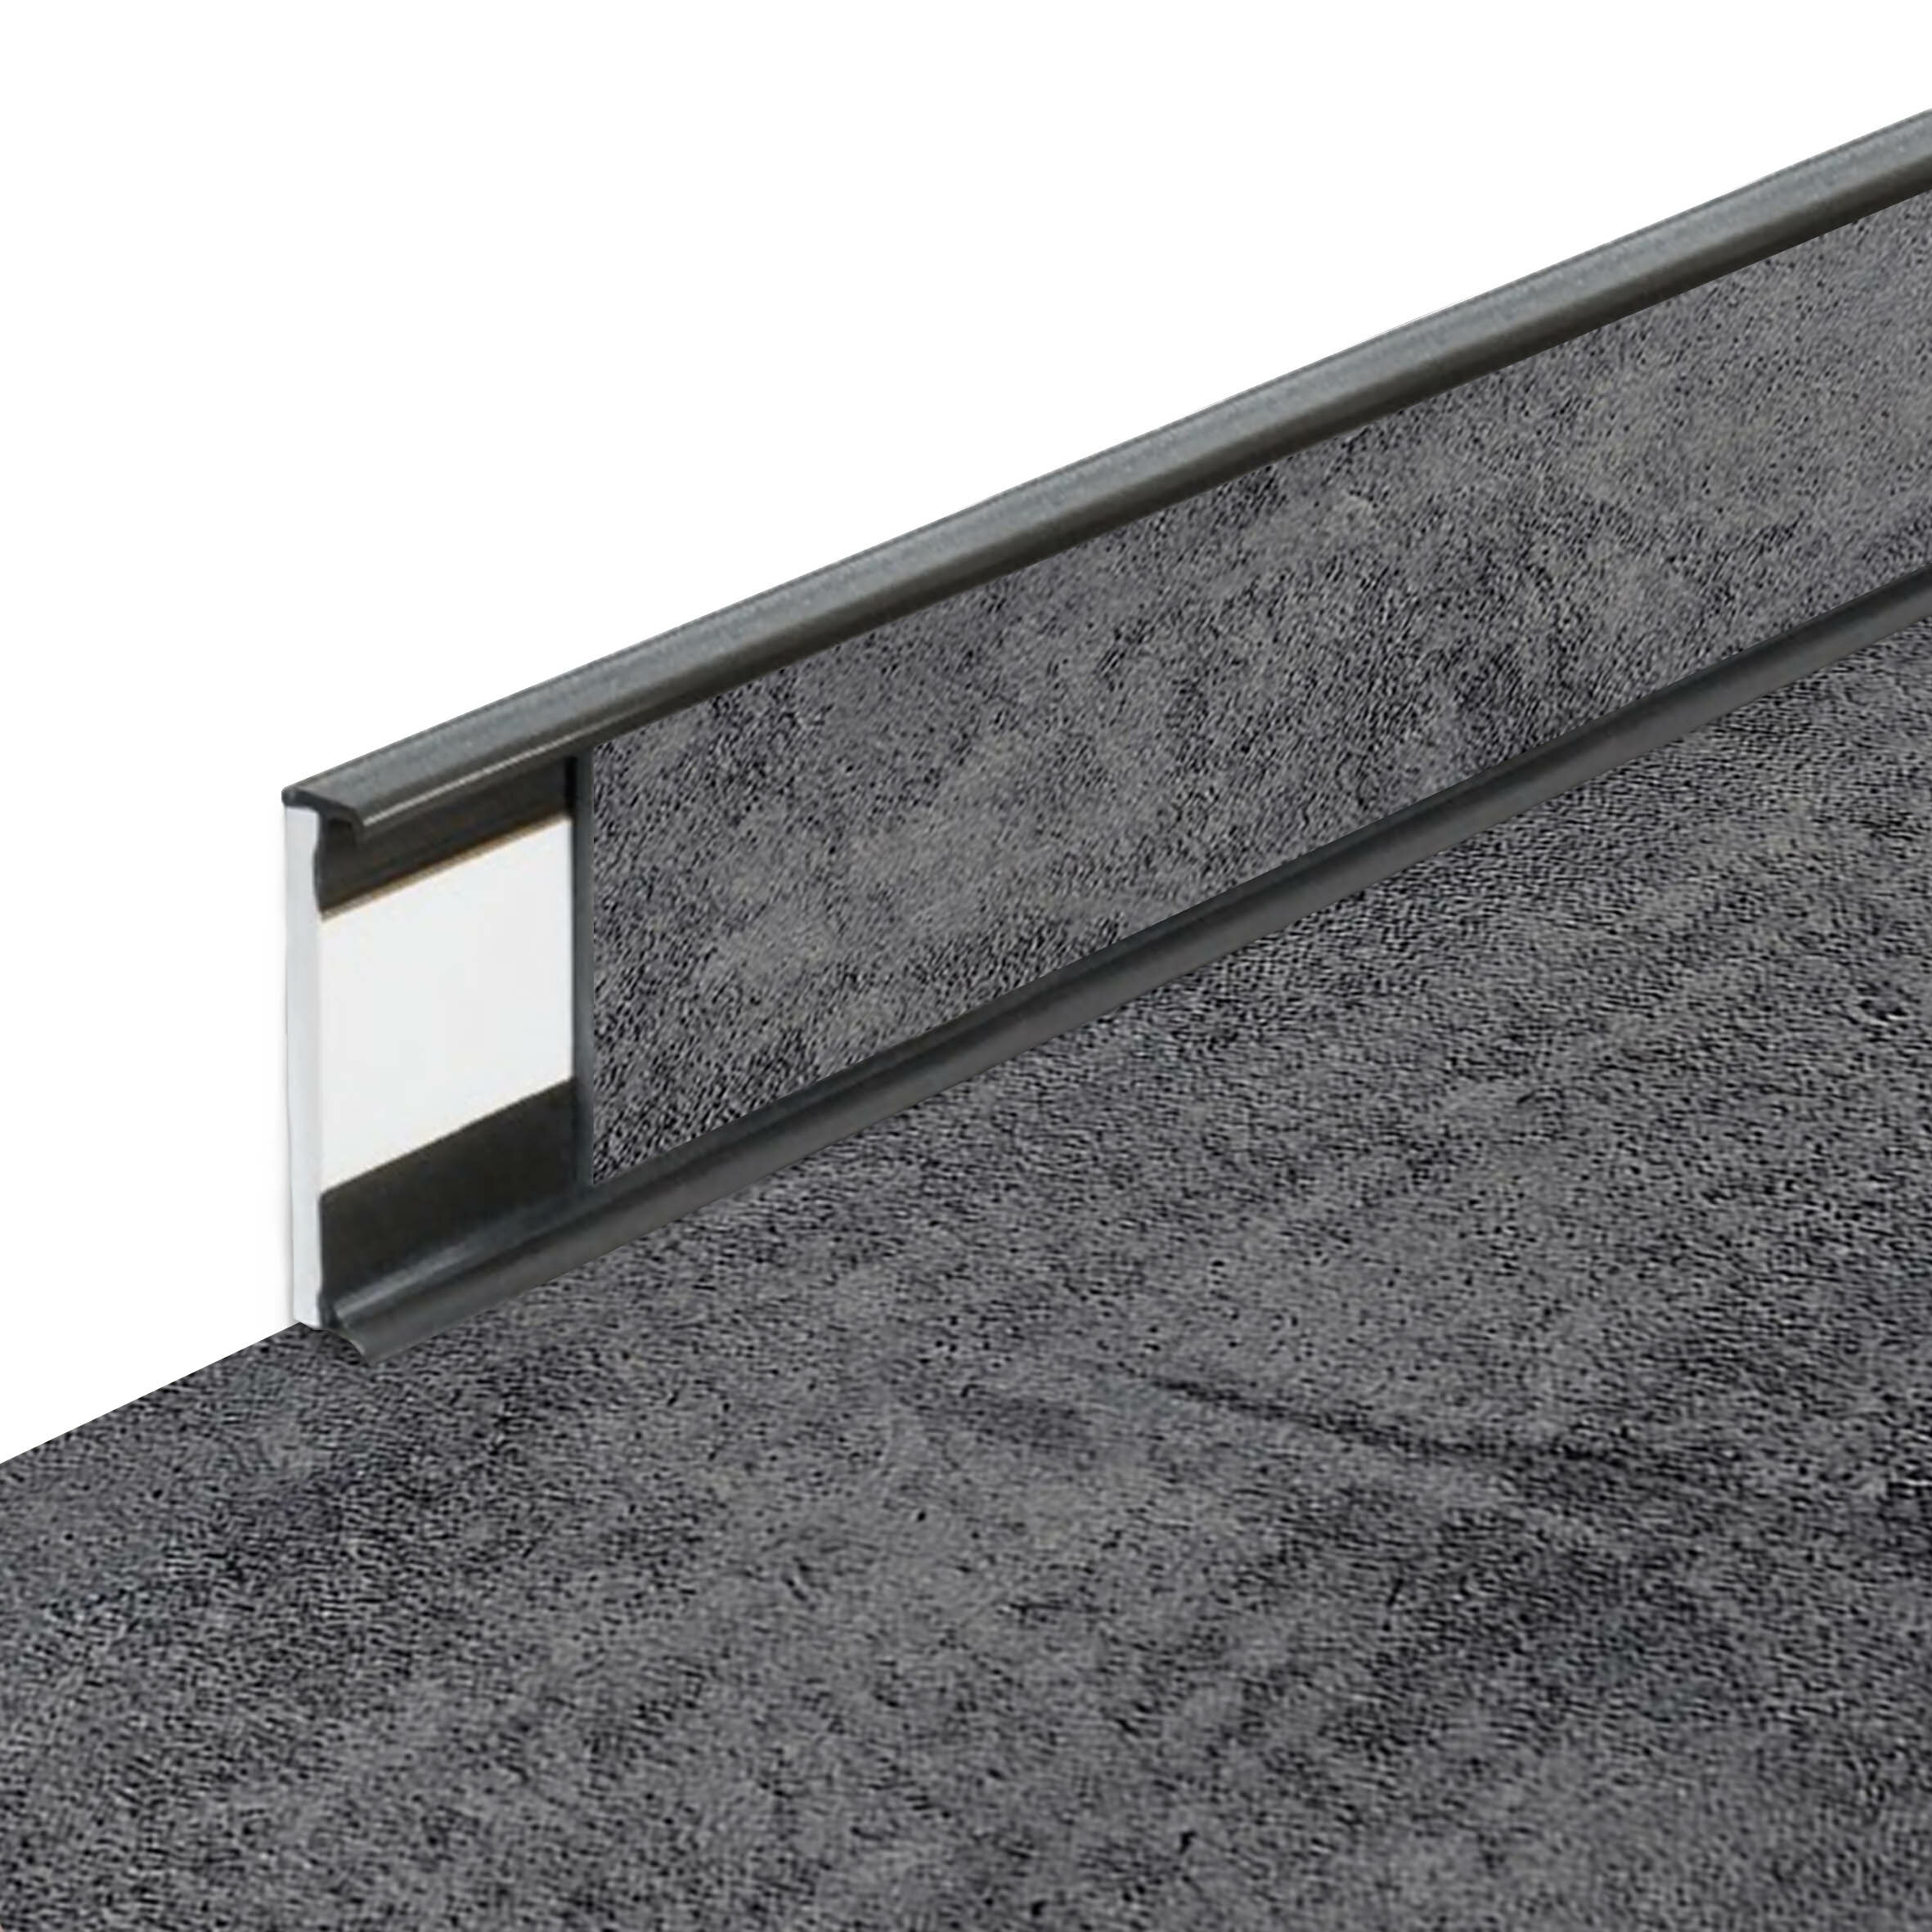 PVC vinylová soklová podlahová lišta Fortelock Business Forsen rugged canyon C021 graphite - délka 200 cm, výška 5,8 cm, tloušťka 1,2 cm